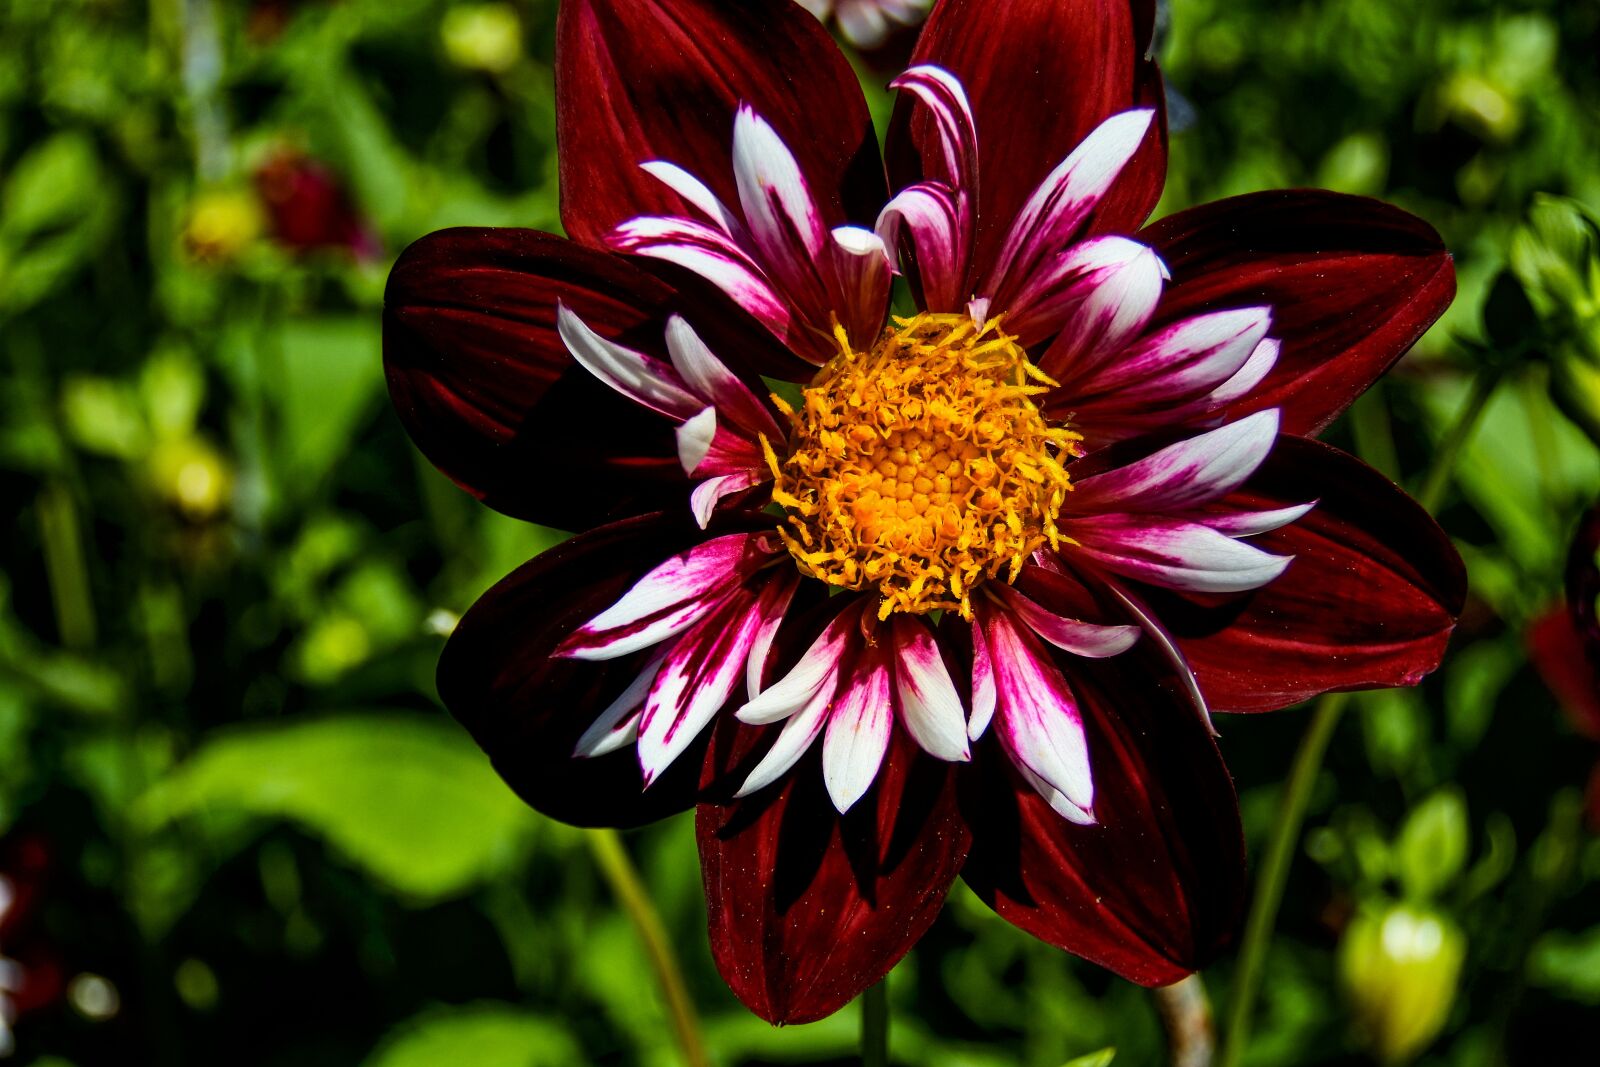 1 NIKKOR VR 10-100mm f/4-5.6 sample photo. Dahlia, flower, color photography